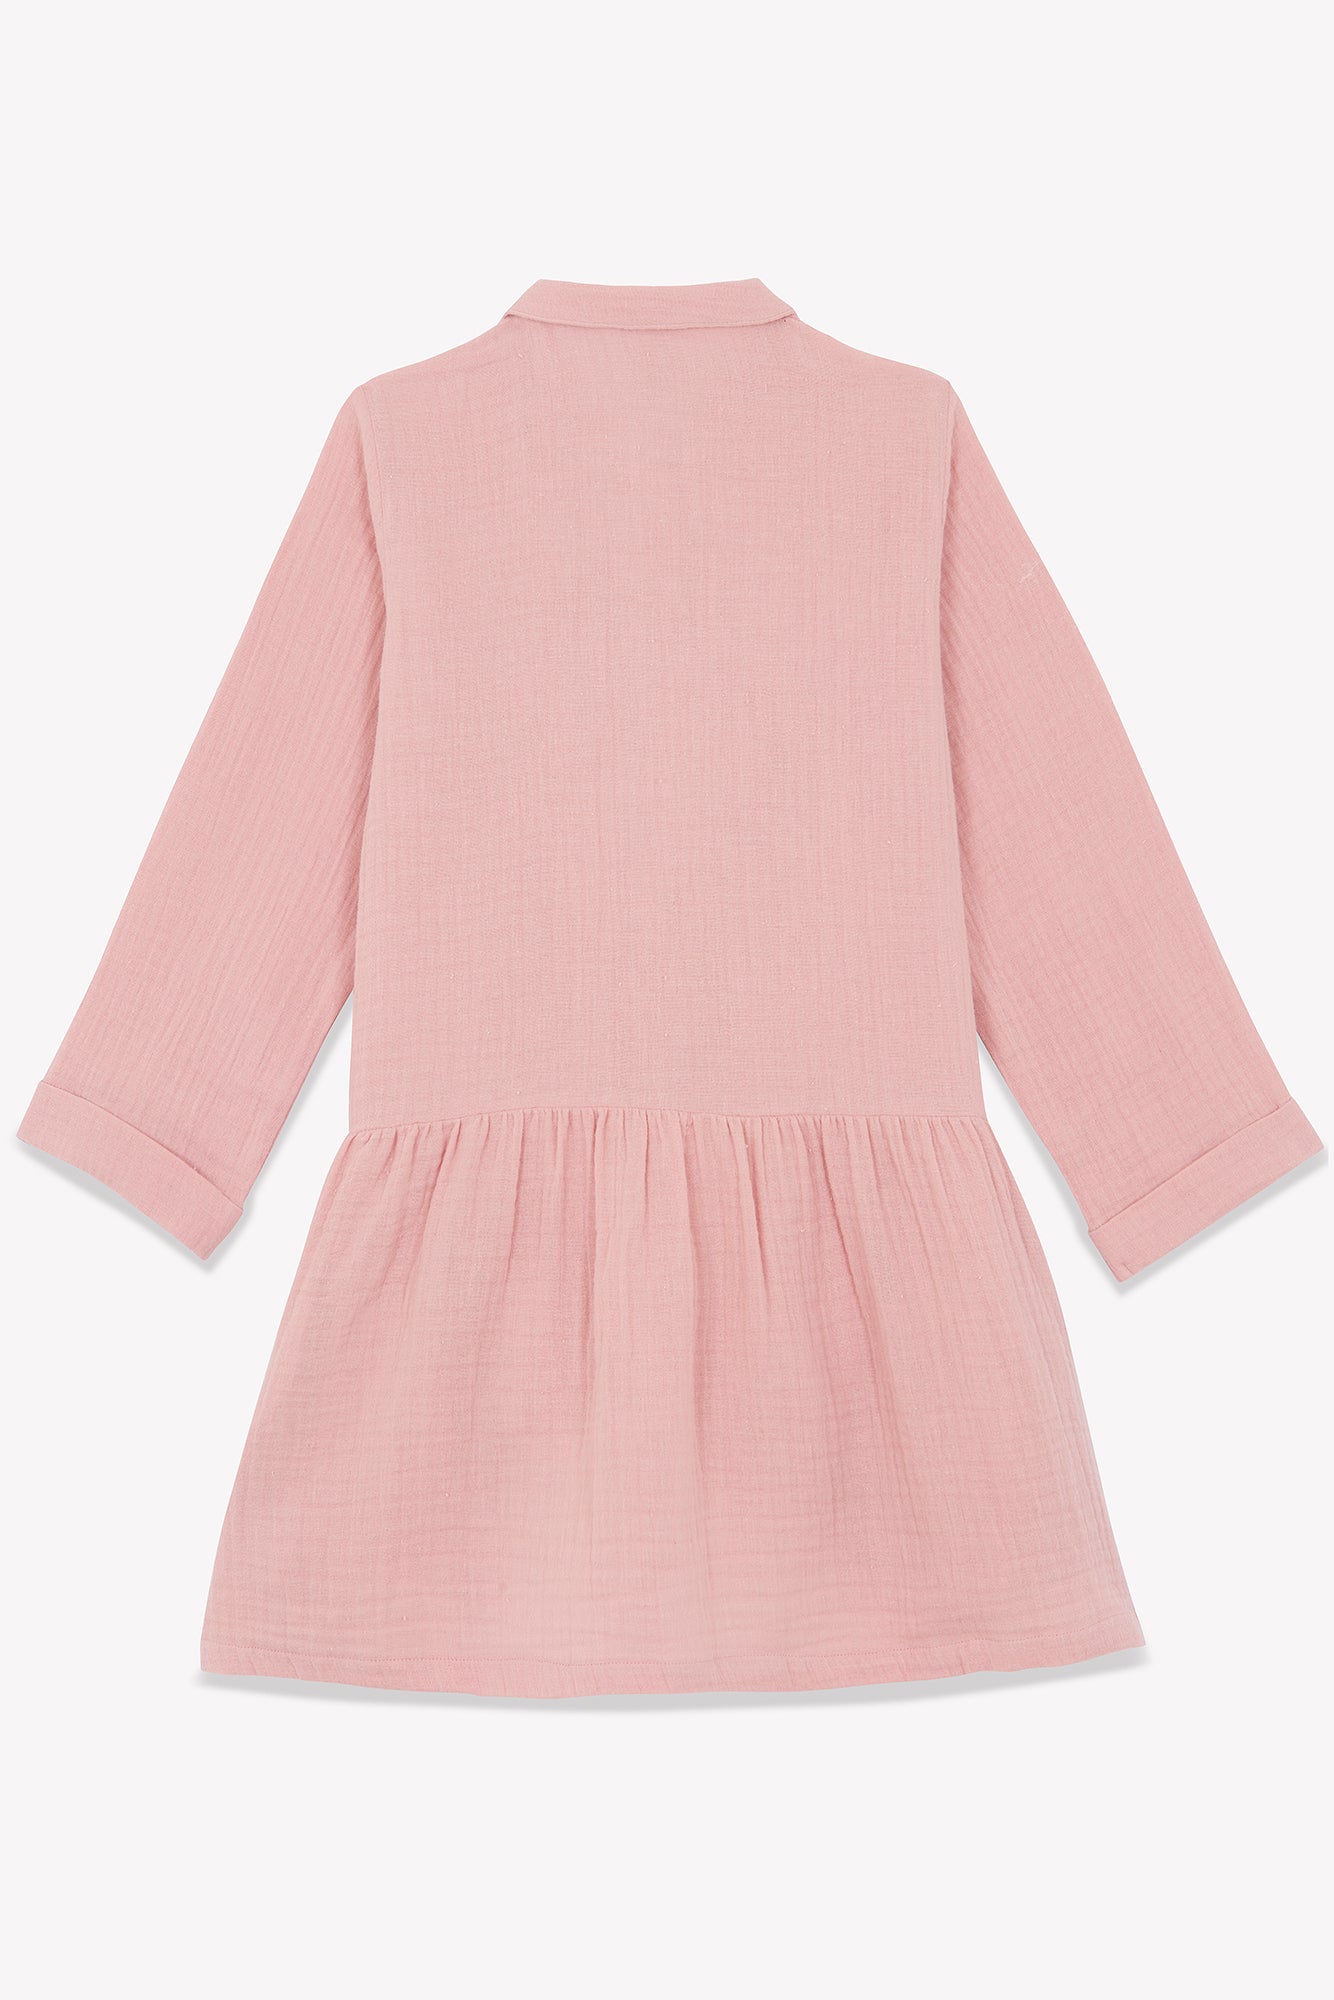 Dress - Rafia Pink in double cotton gauze